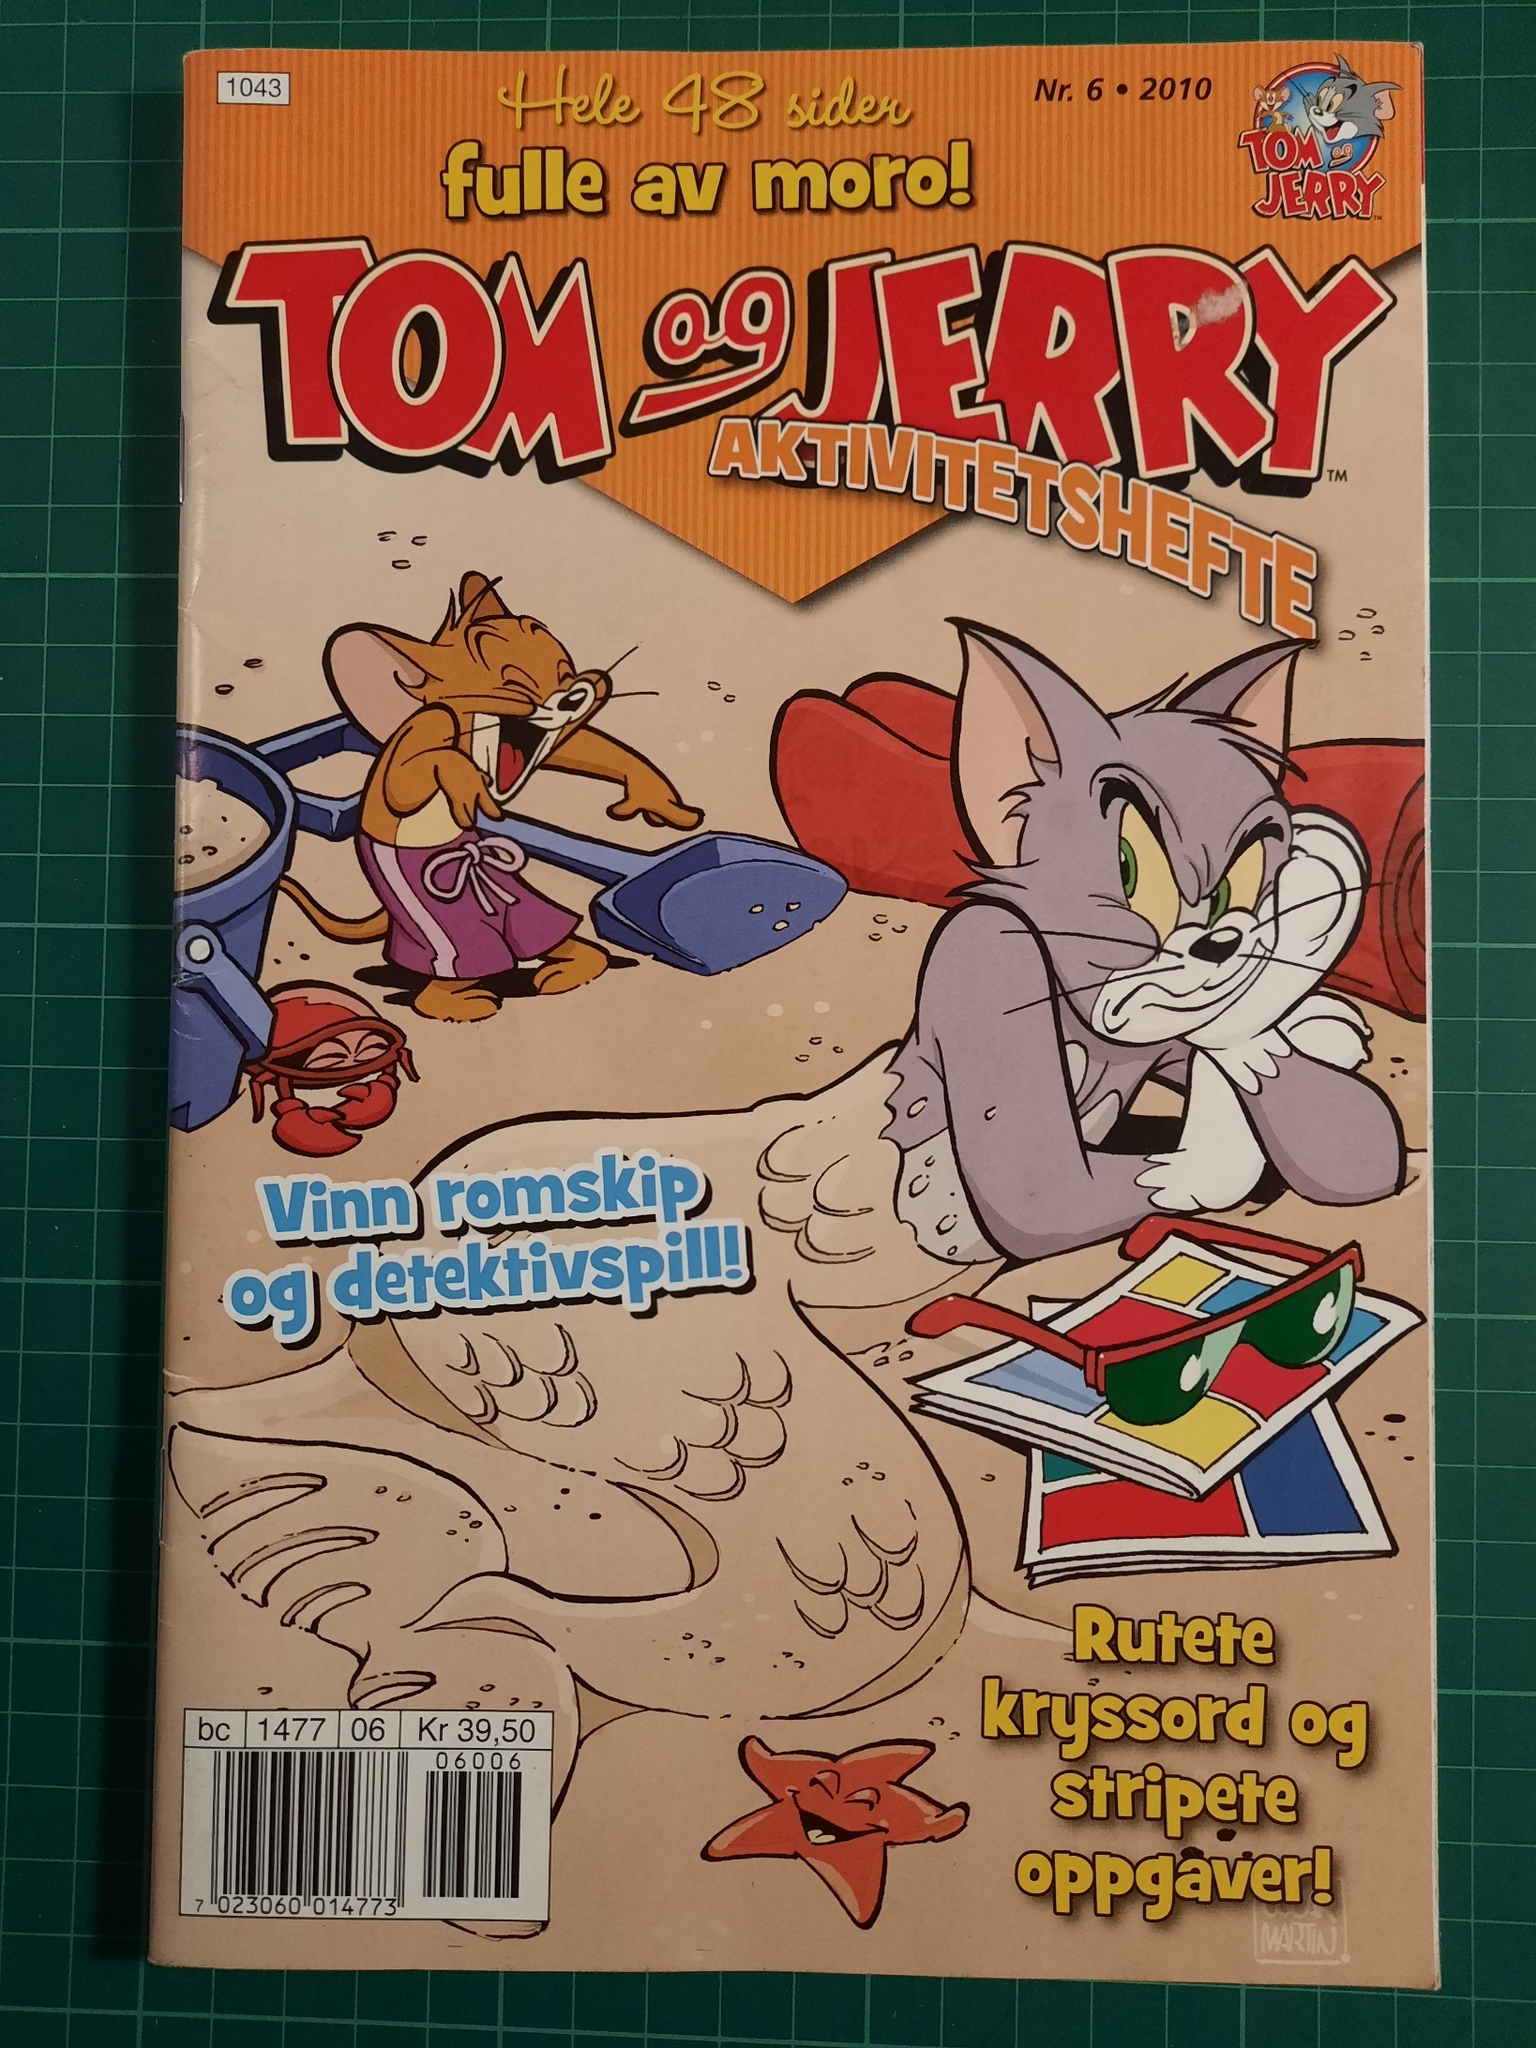 Tom og Jerry aktivitetshefte 2002 - 05